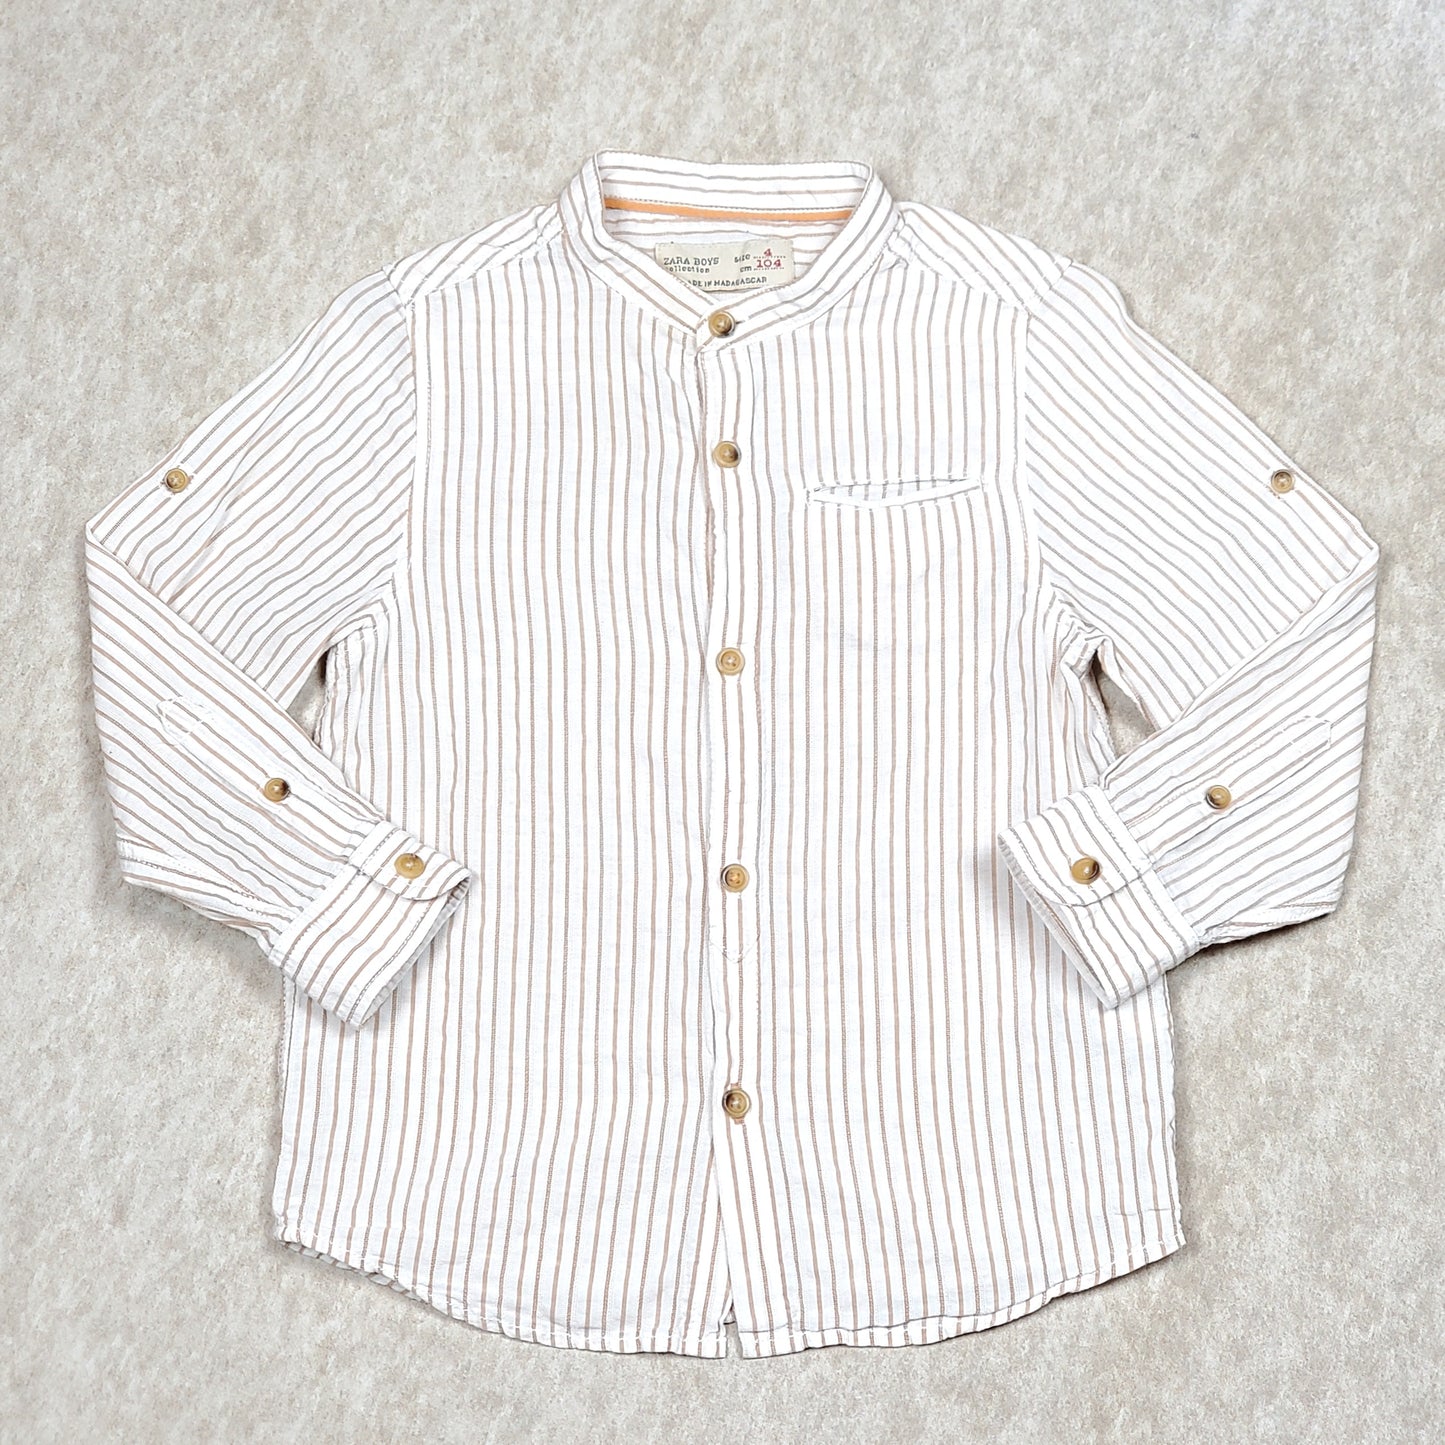 Used Zara Boys White Tan Striped Dress Shirt Size 4 View 1